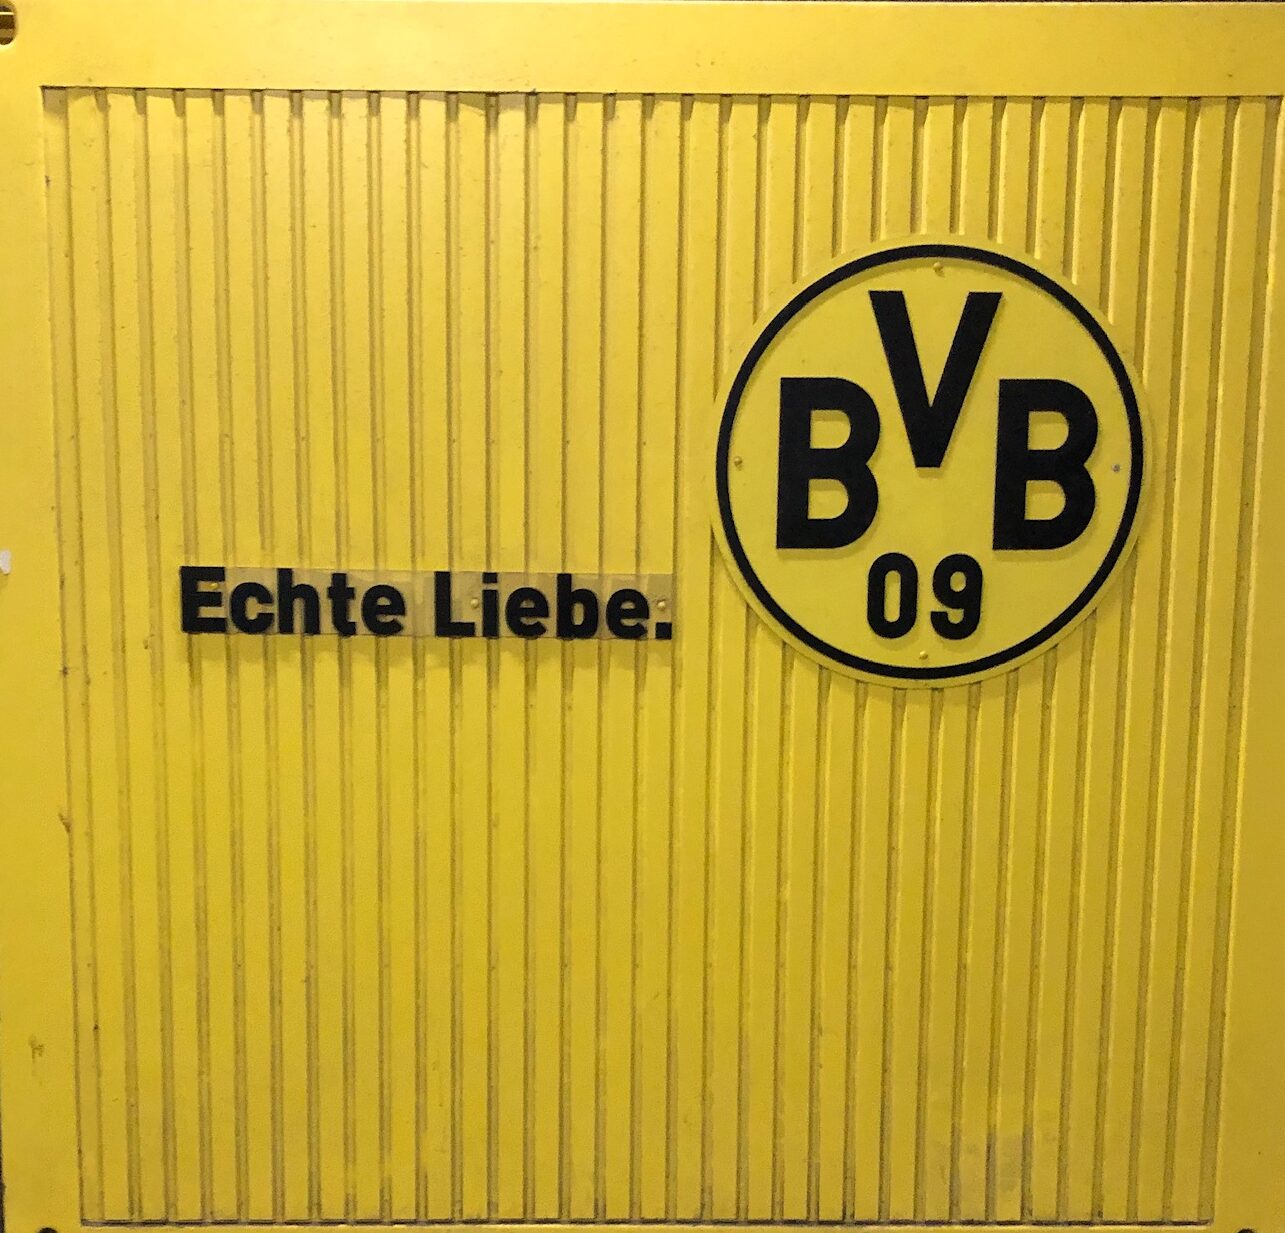 BVB, Borussia Dortmund, Sébastien Haller